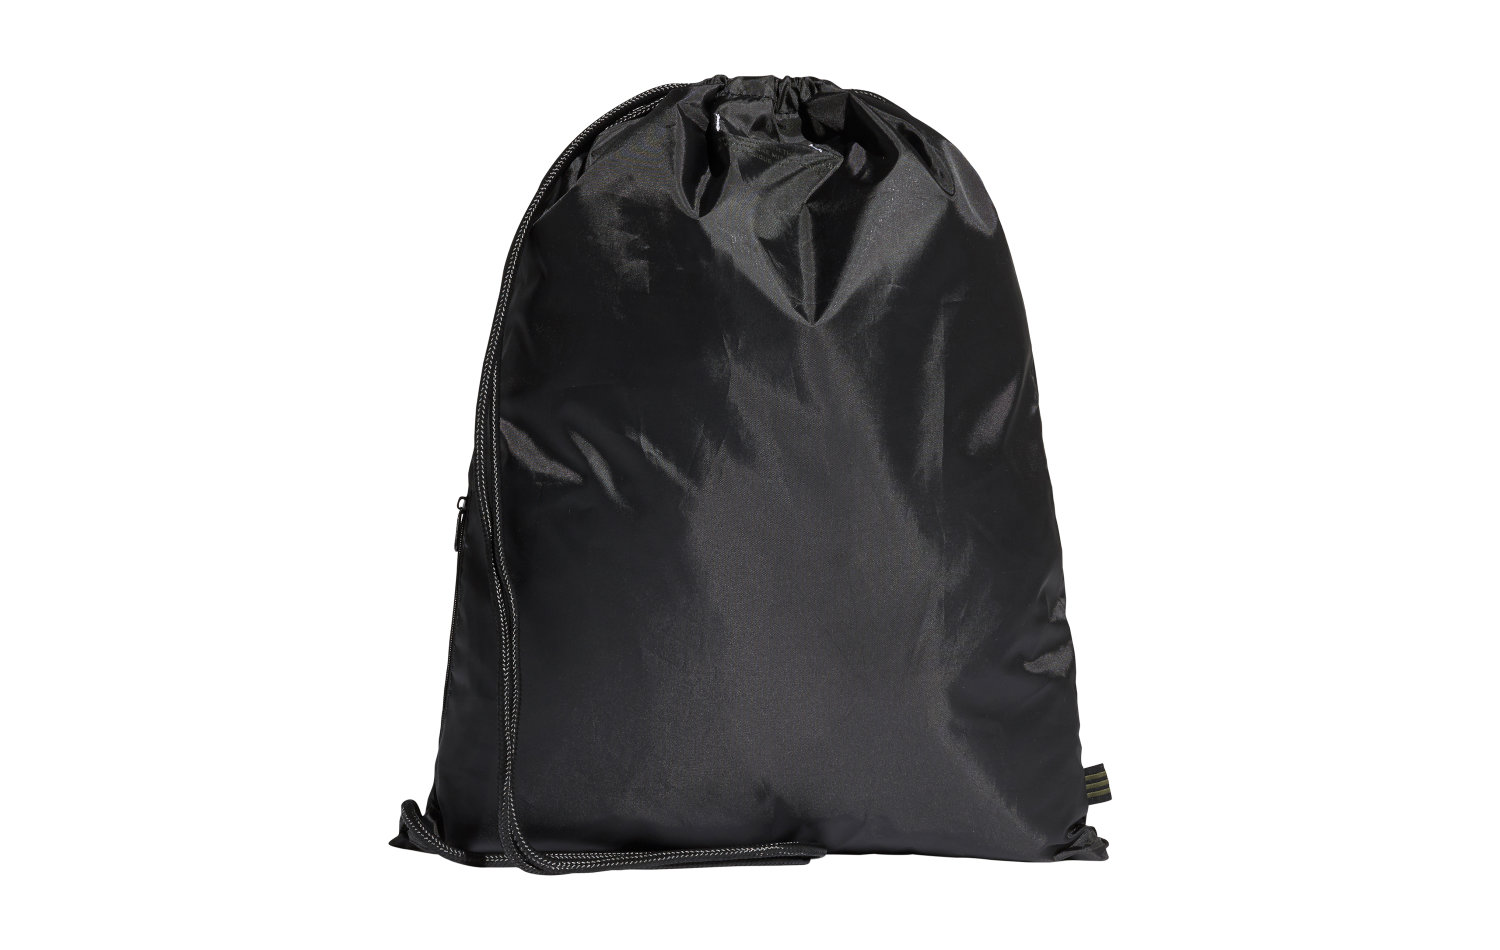 Adidas Gymsack Trefoil Bag (DV2388)